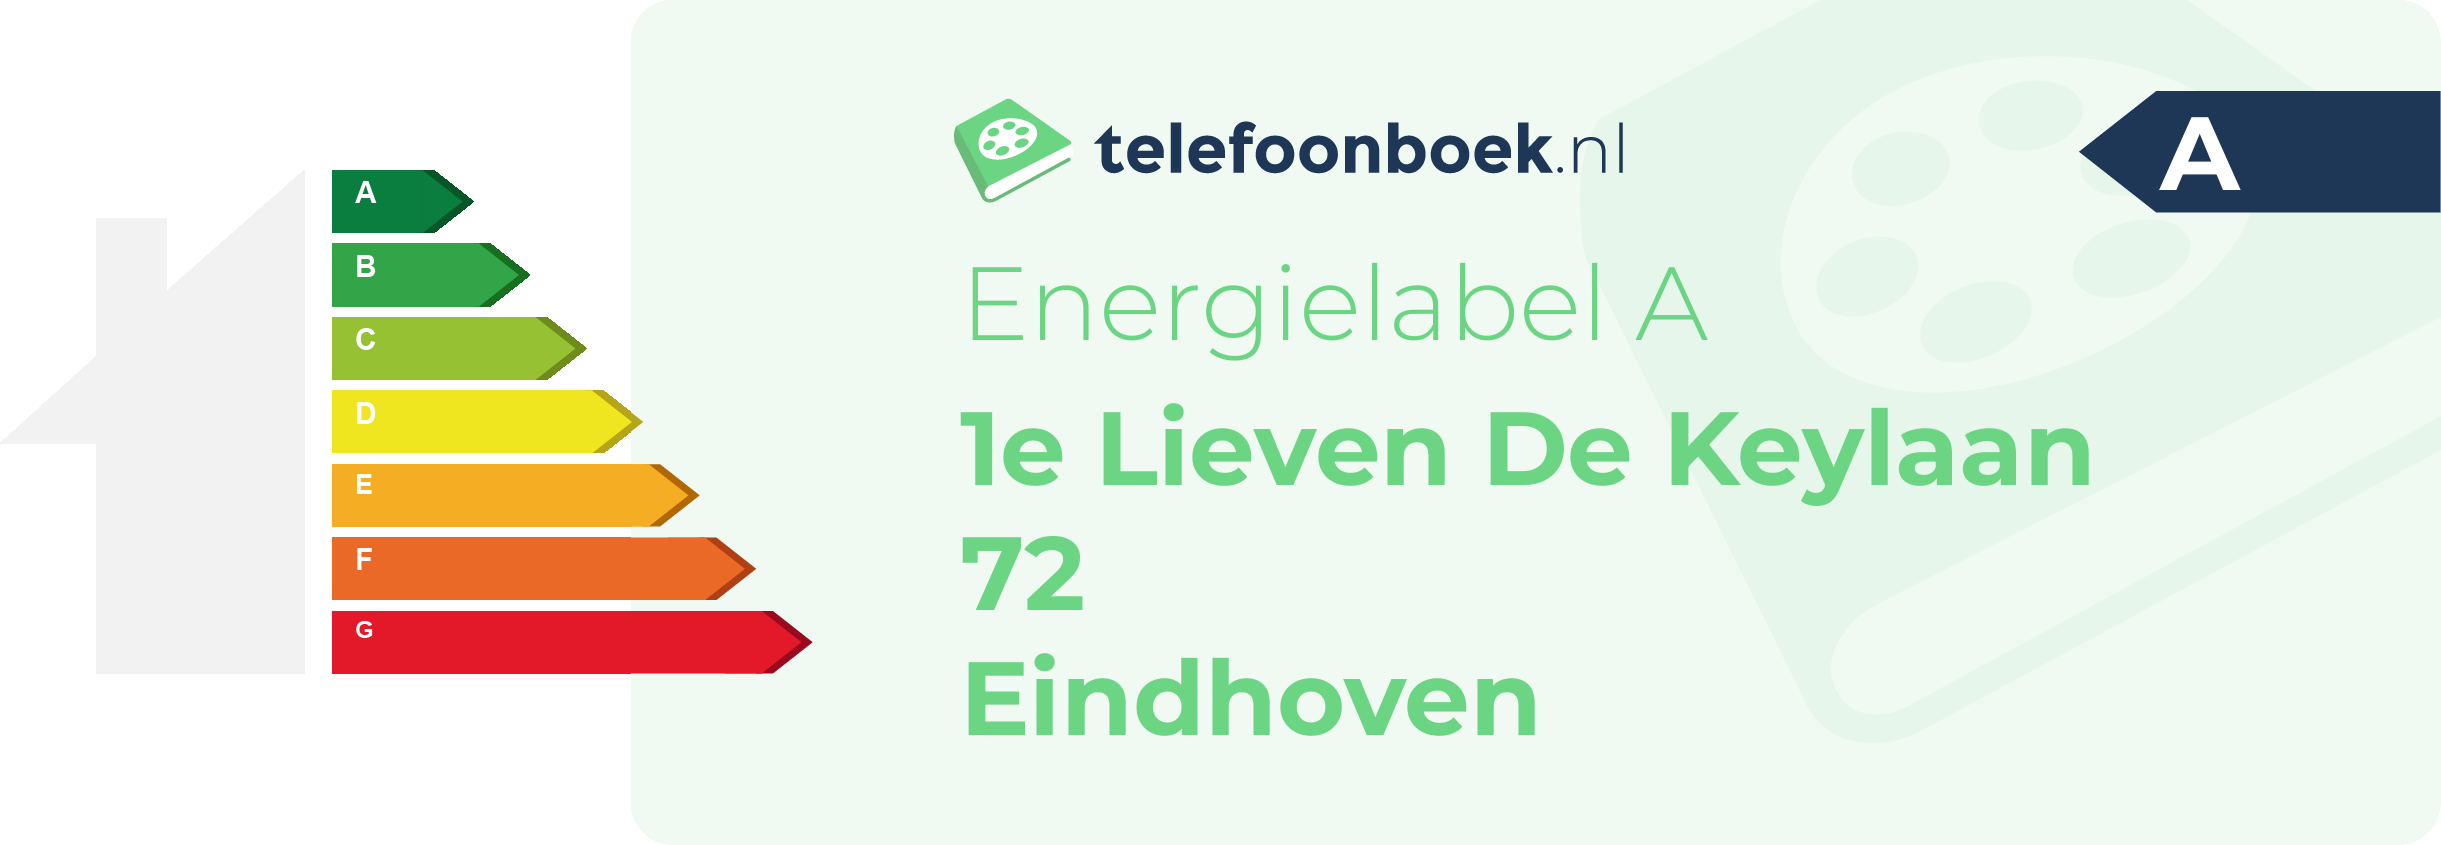 Energielabel 1e Lieven De Keylaan 72 Eindhoven